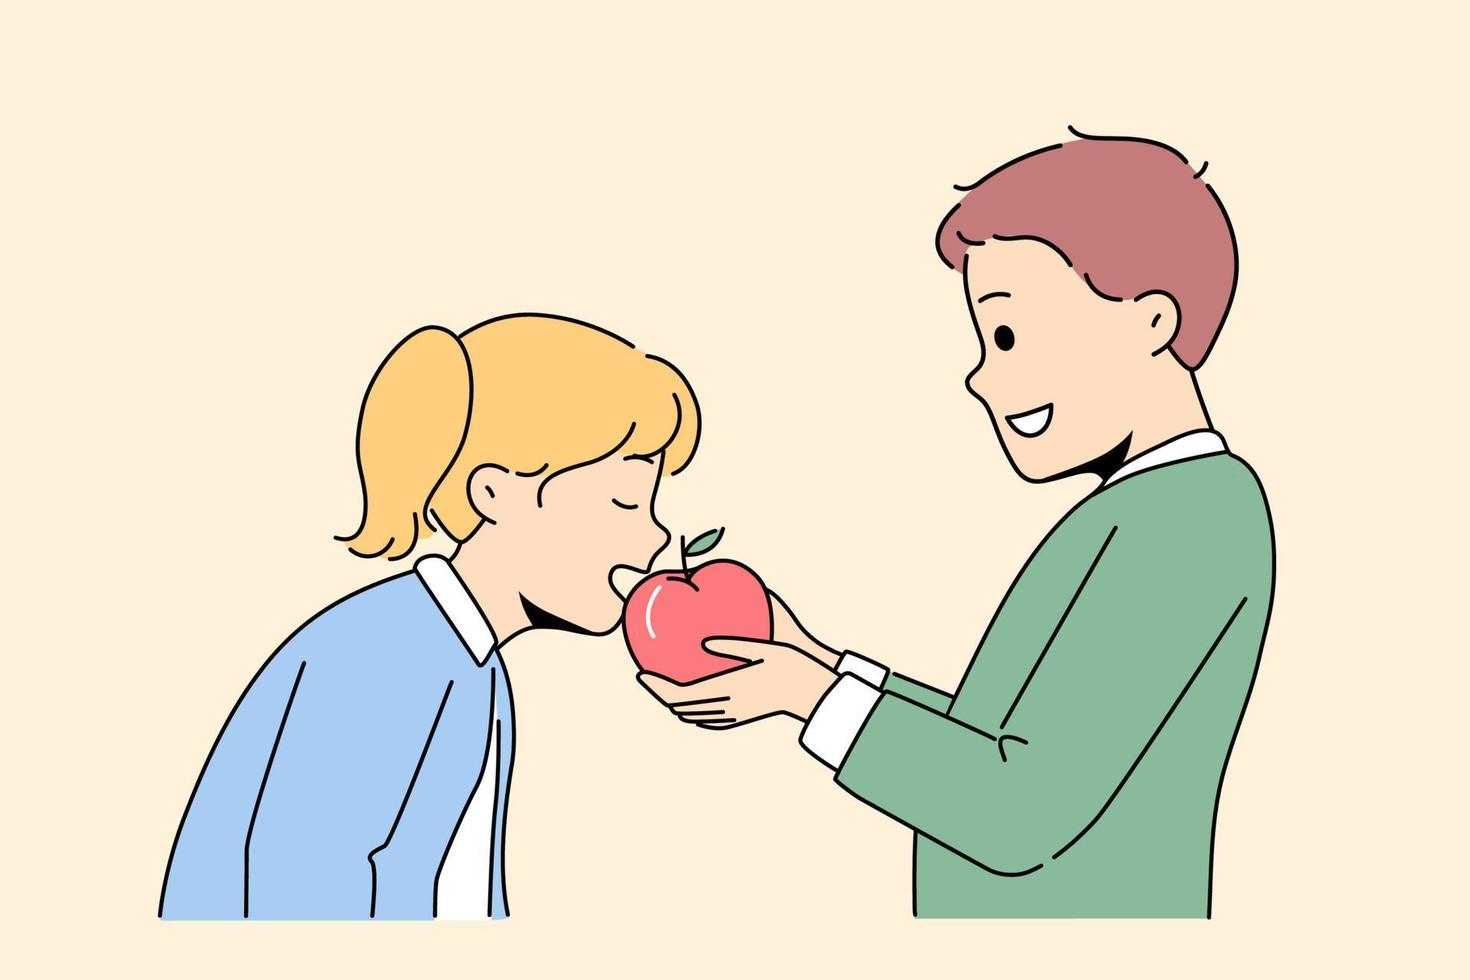 sorridente pequeno crianças compartilhar fresco maçã. feliz Garoto dar mordida delicioso fruta com menina miúdo. infância e amizade. vetor ilustração.